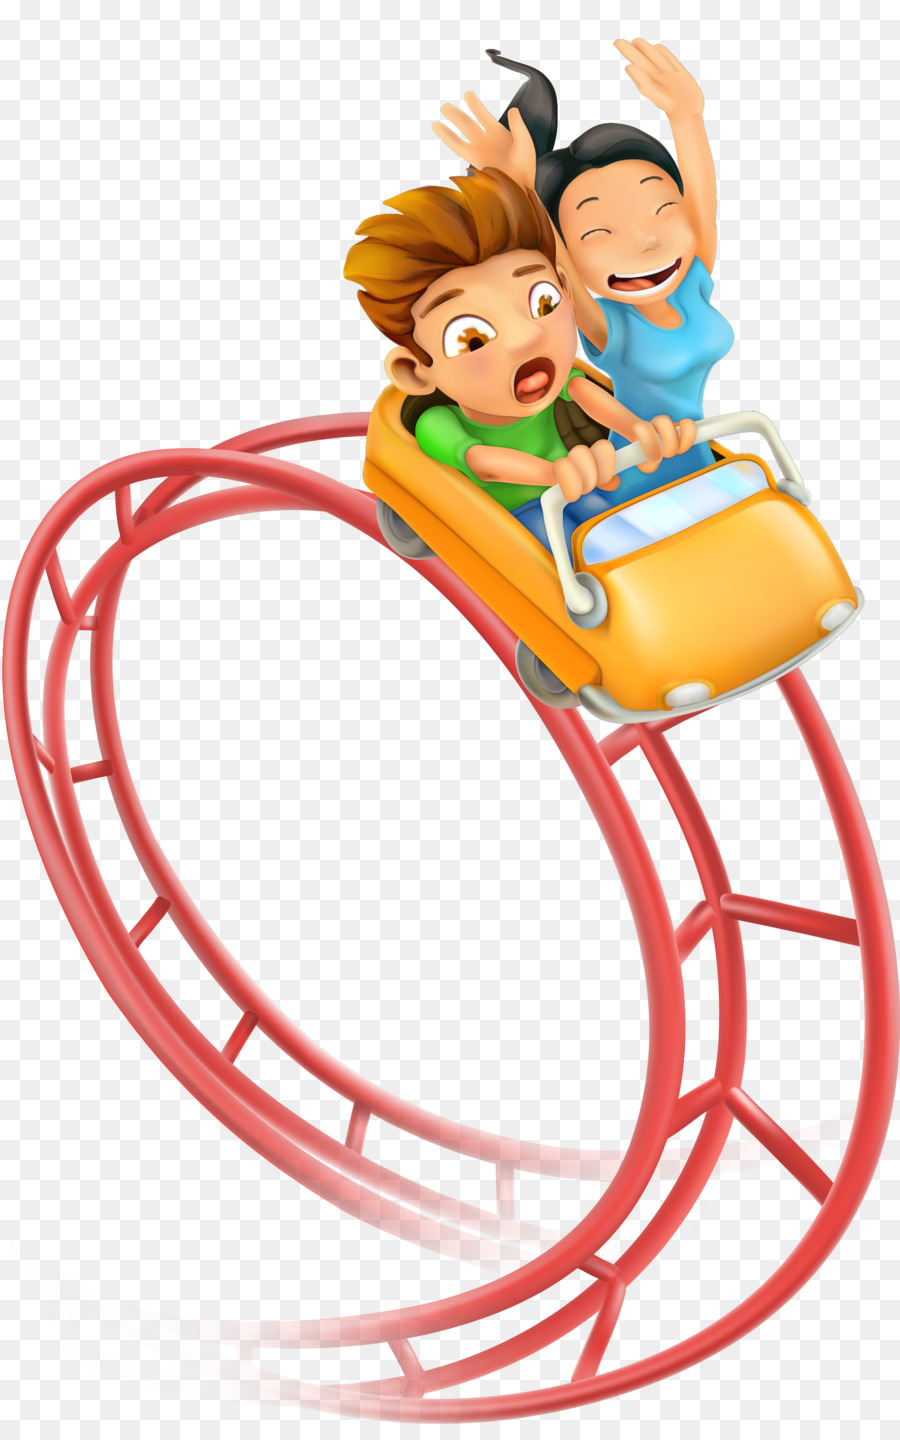 Roller coaster Amusement park Clip art - Vector cartoon cute children